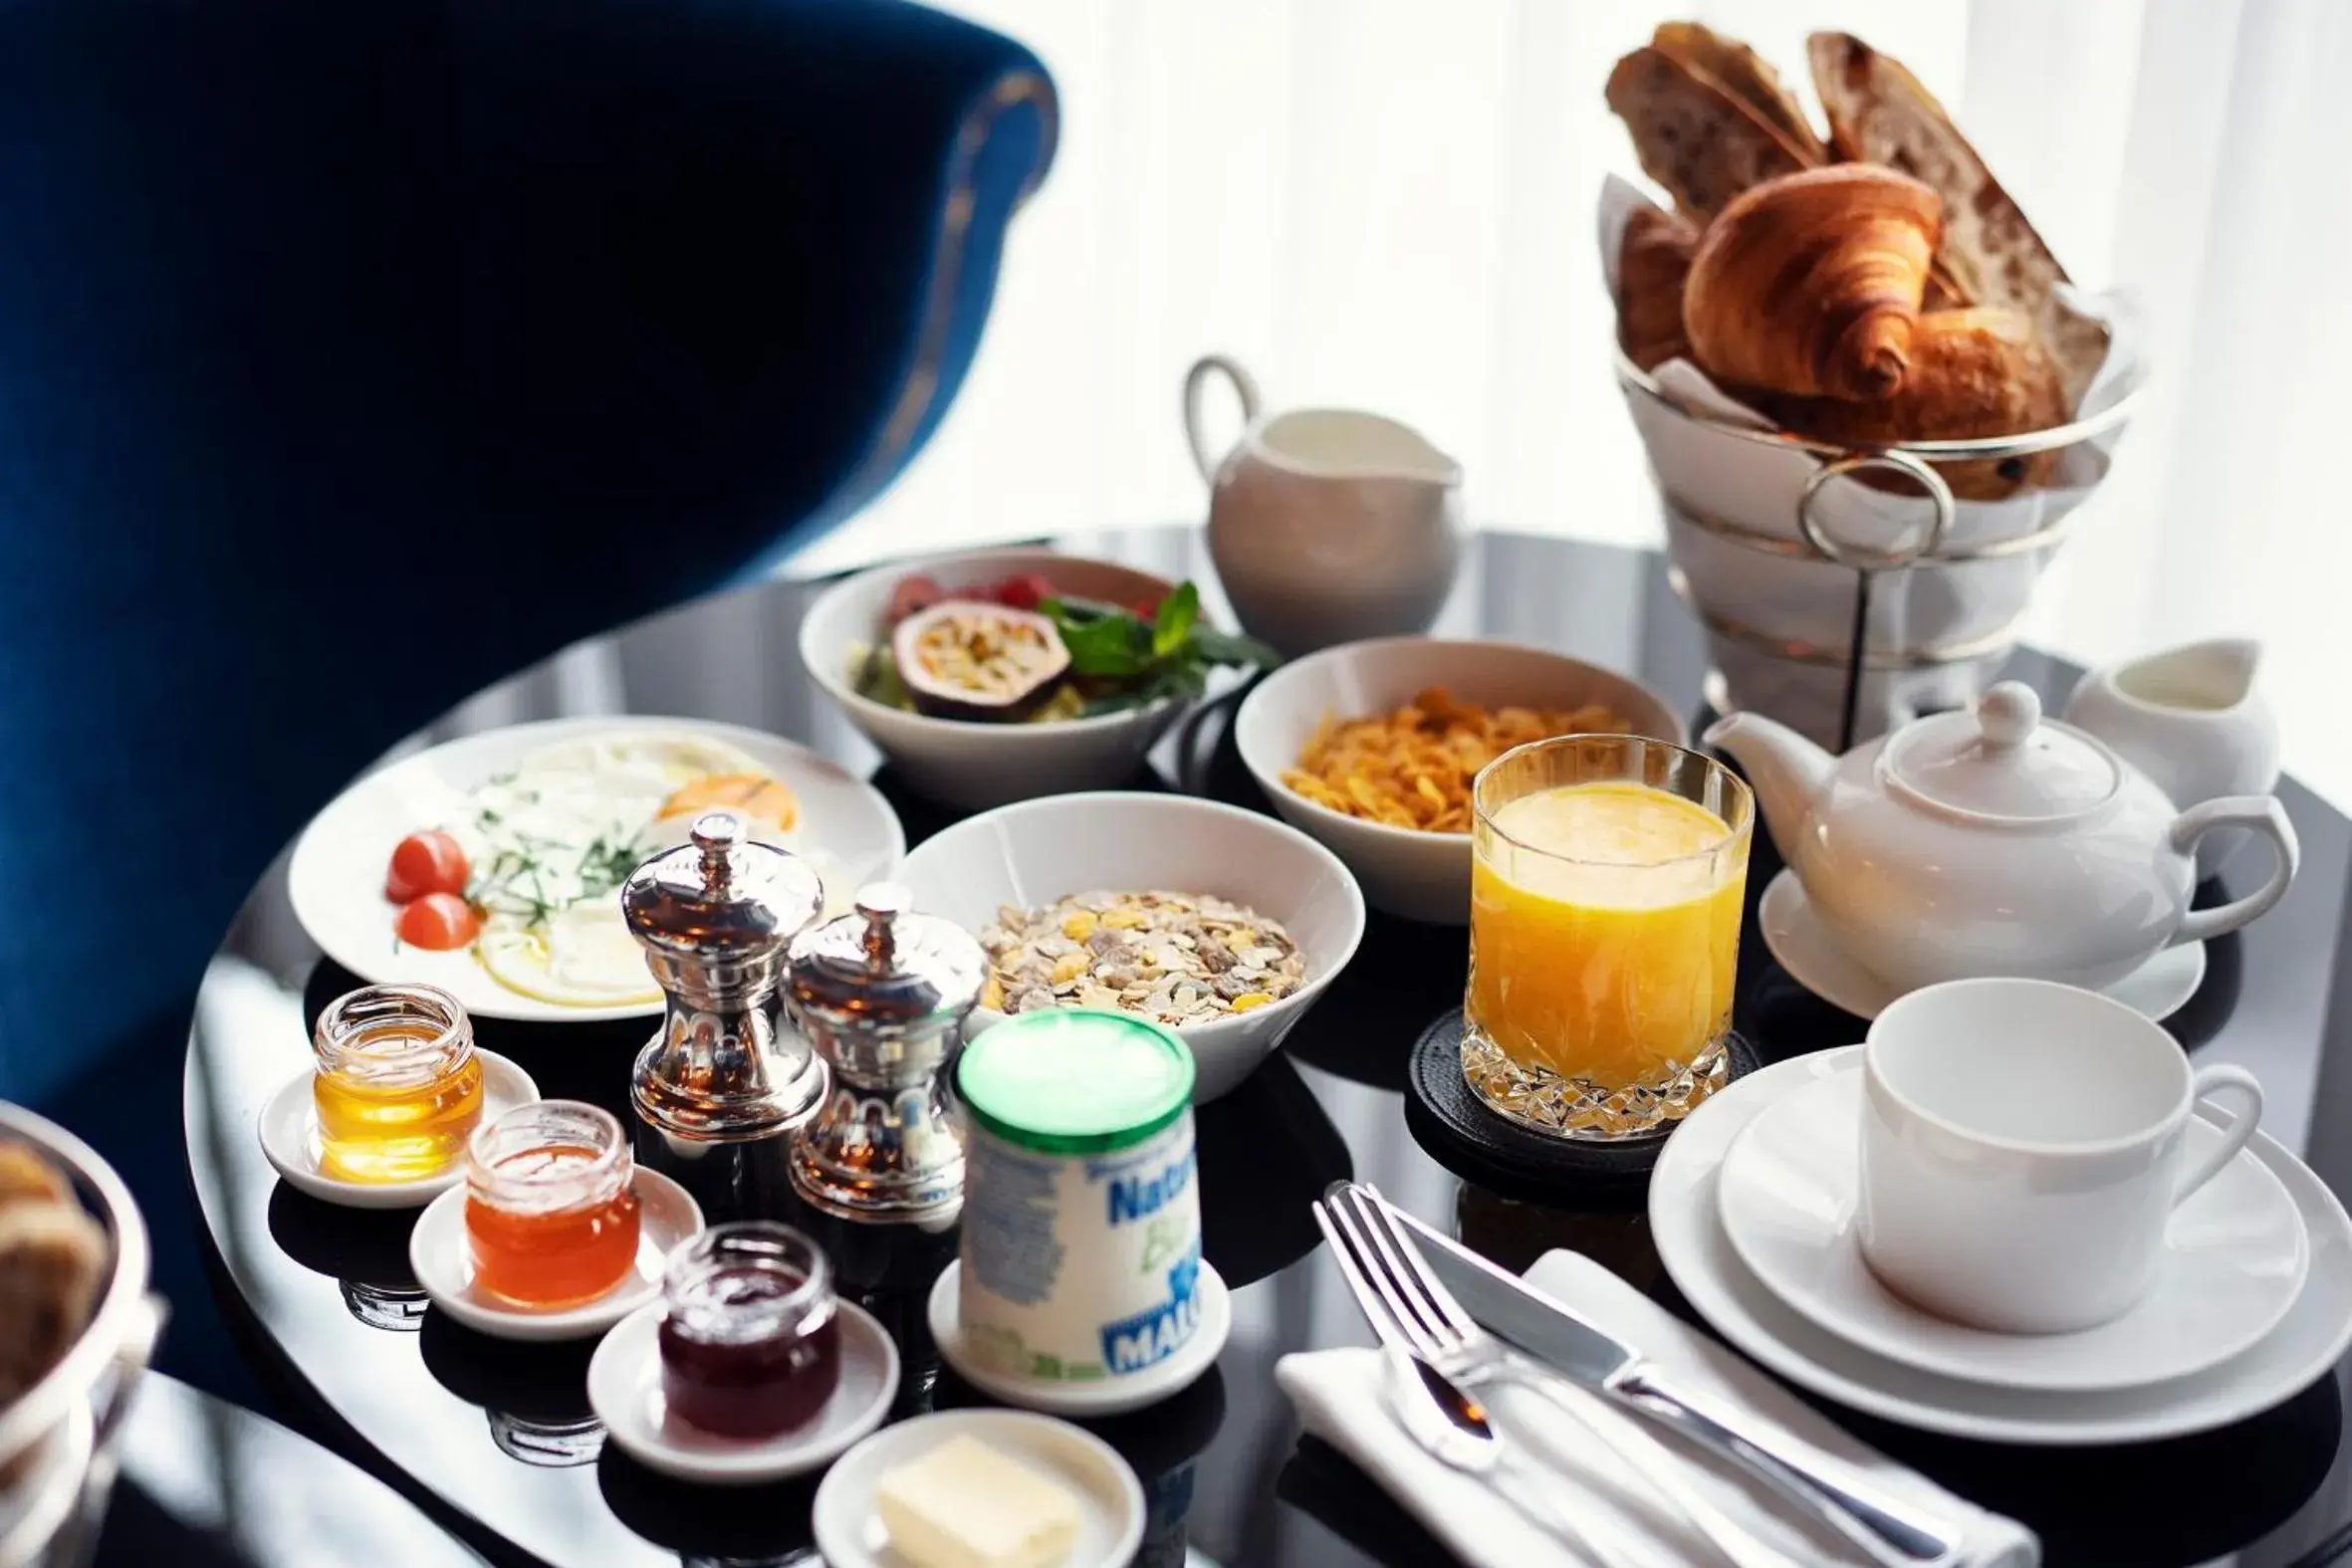 Breakfast in Maison Souquet